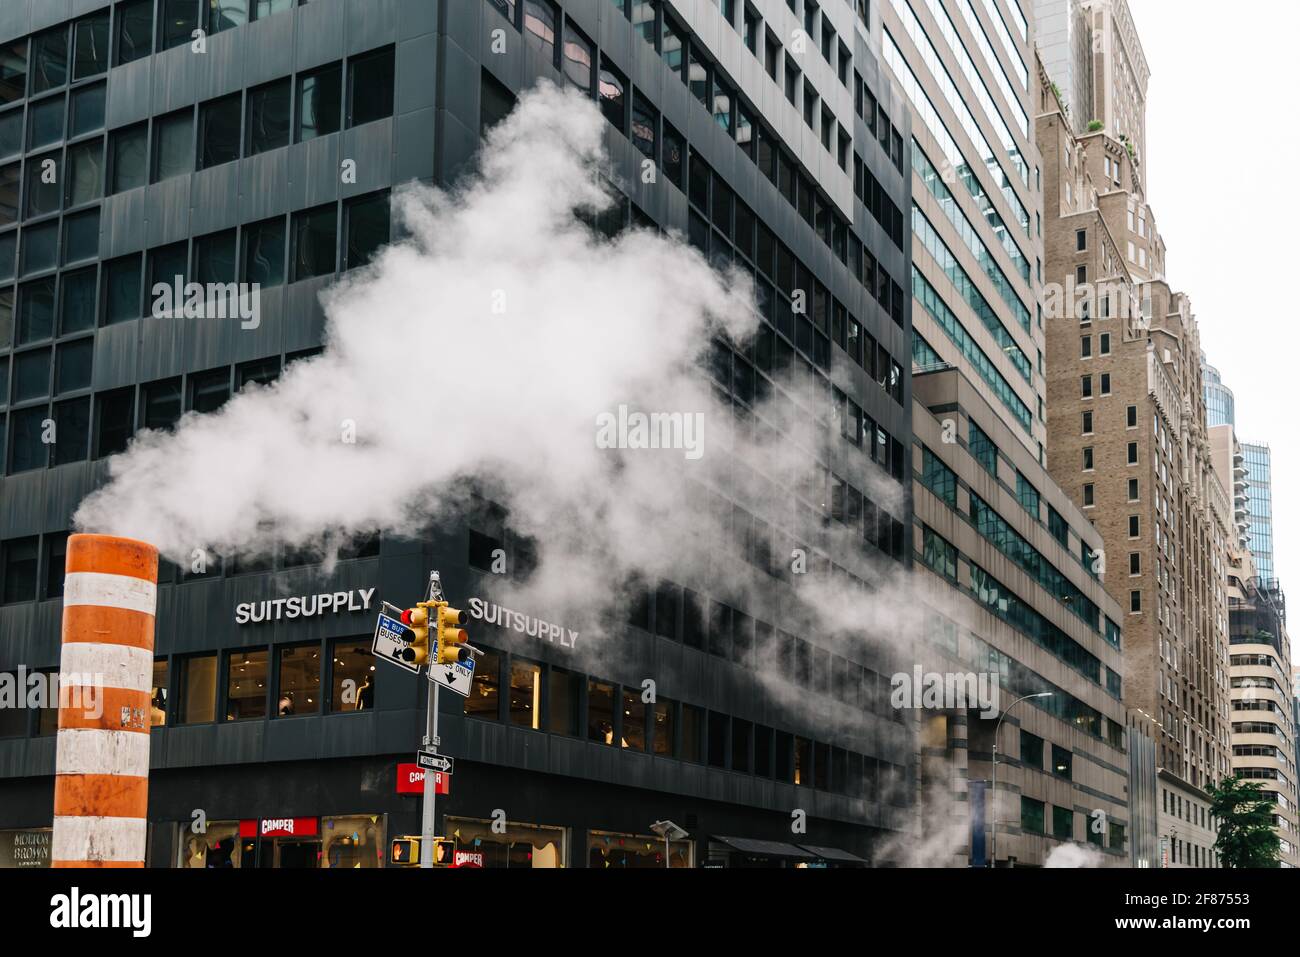 New York City, États-Unis - 24 juin 2018 : vapeur sortant de la cheminée pour l'aération du système de chauffage de quartier dans le quartier Midtown de New York. Changement climatique et carbone F Banque D'Images